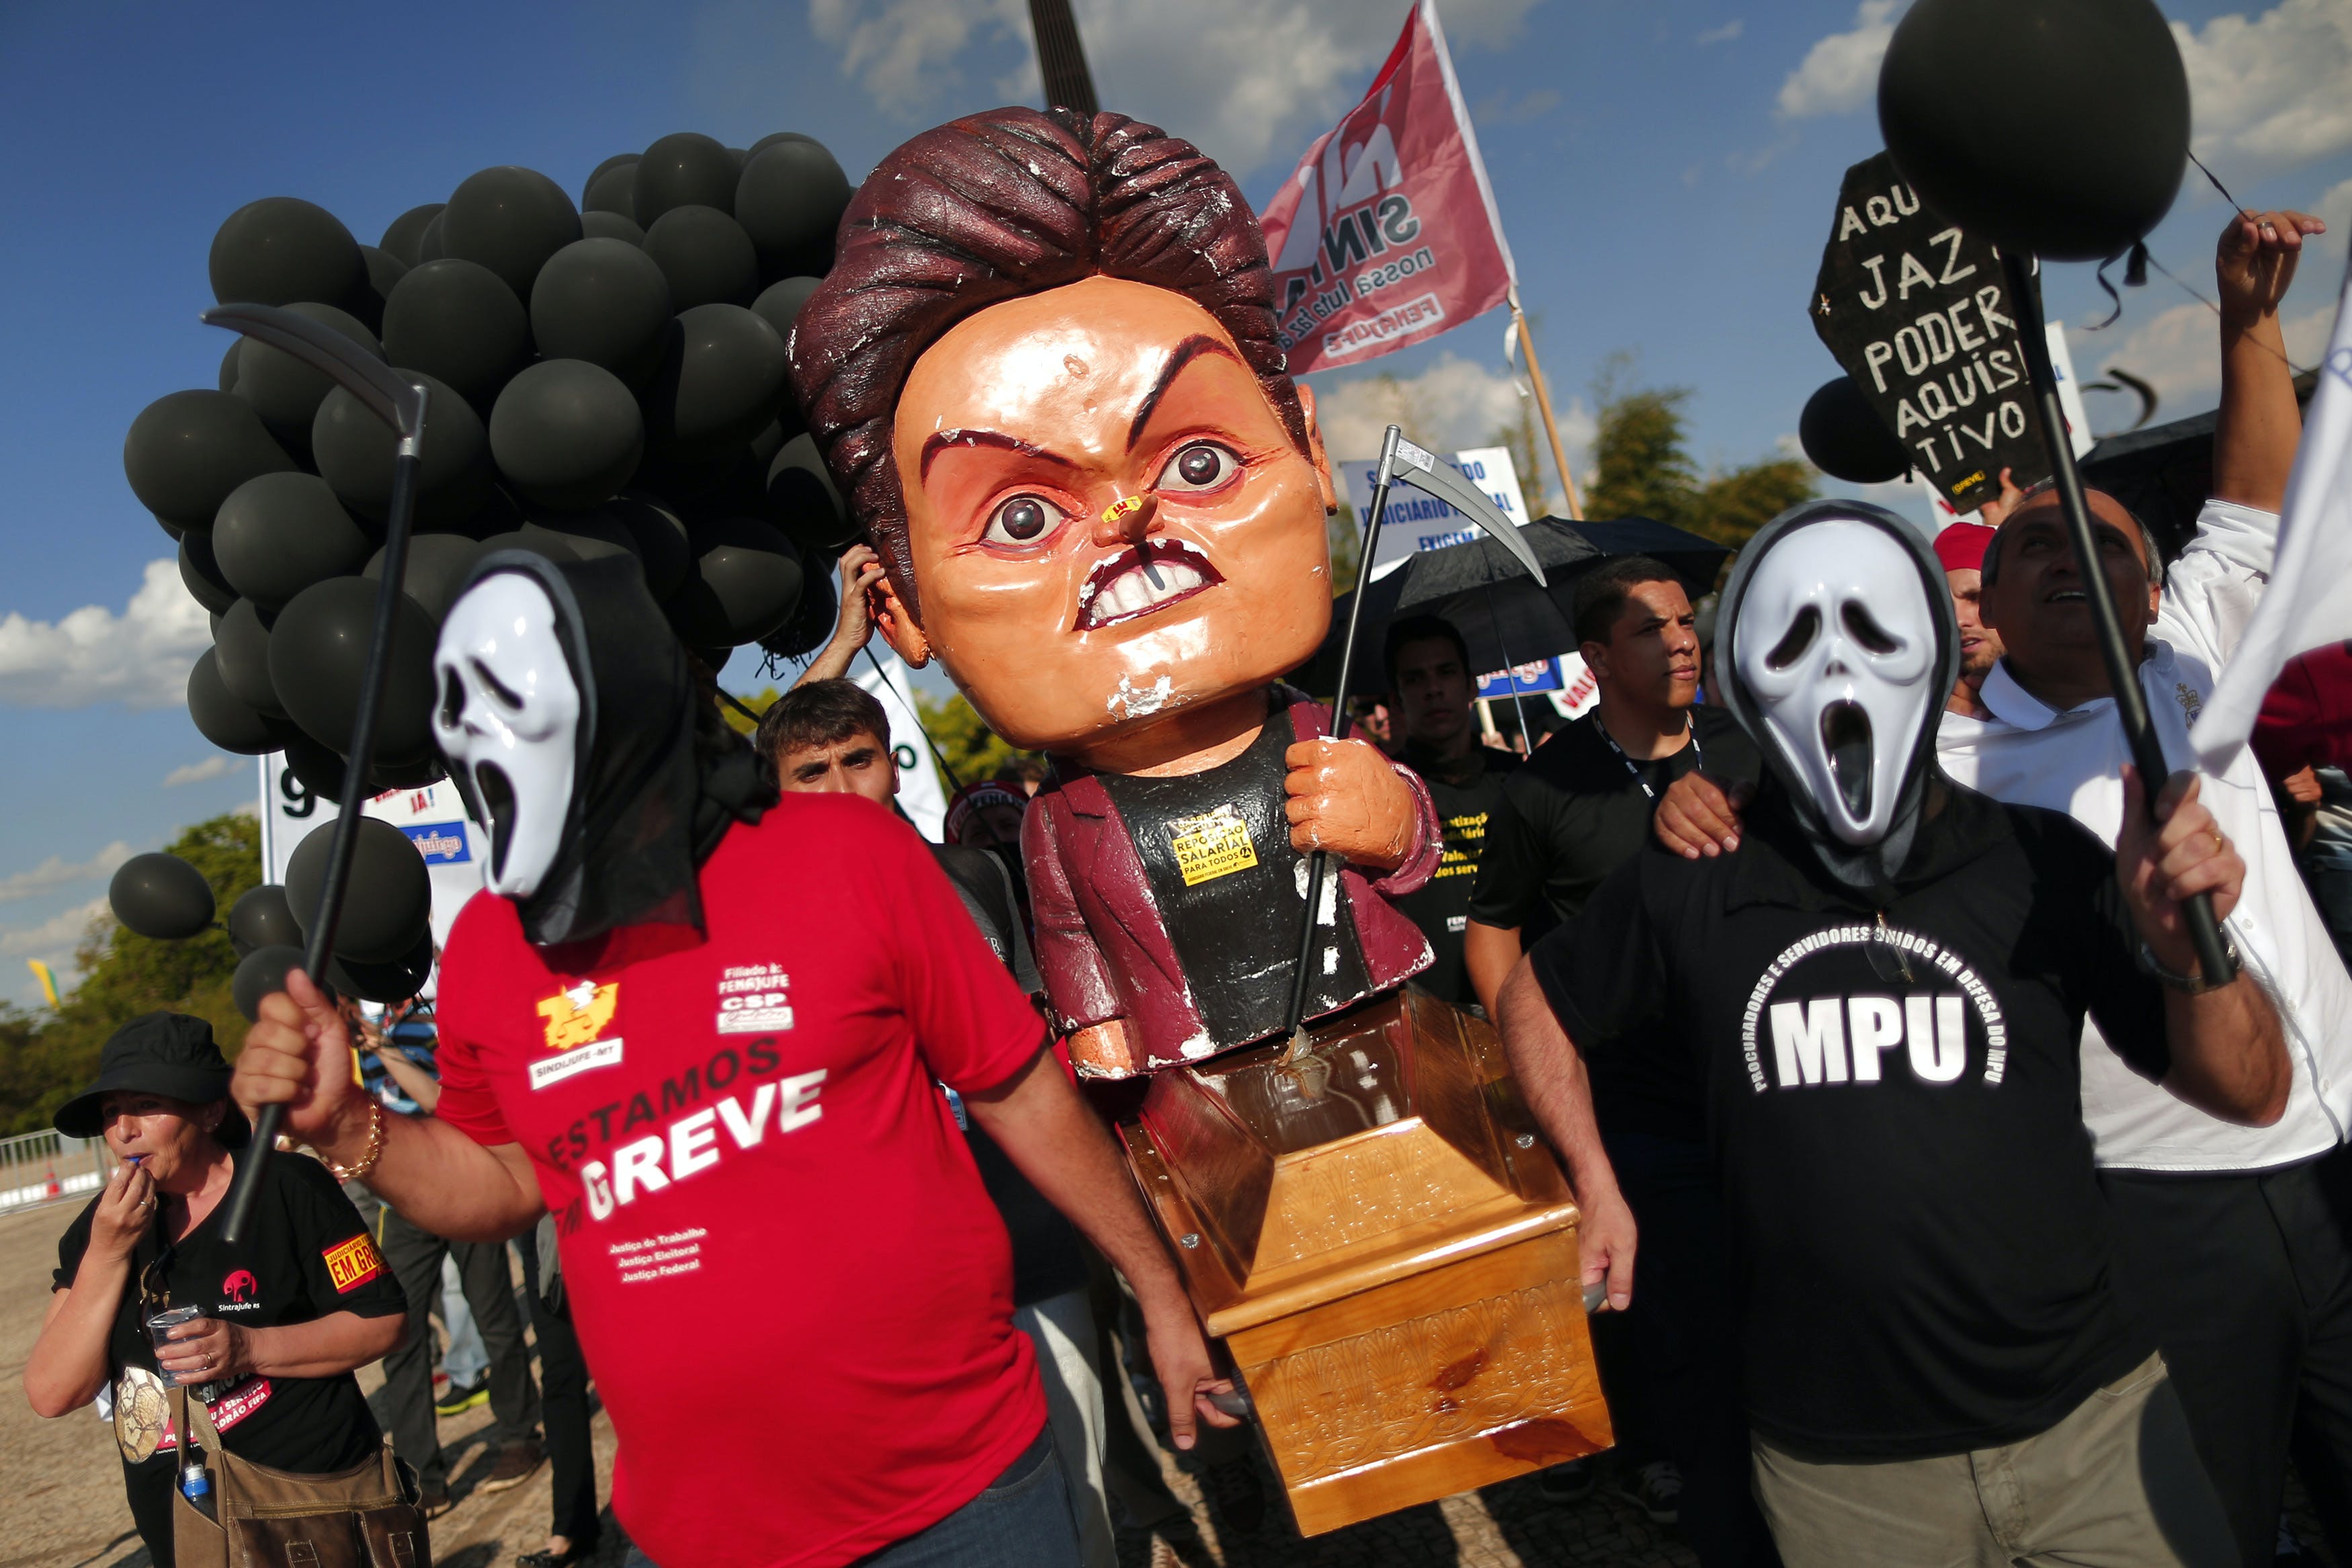 反羅賽芙貪腐無能 巴西全國串聯上街要求彈劾